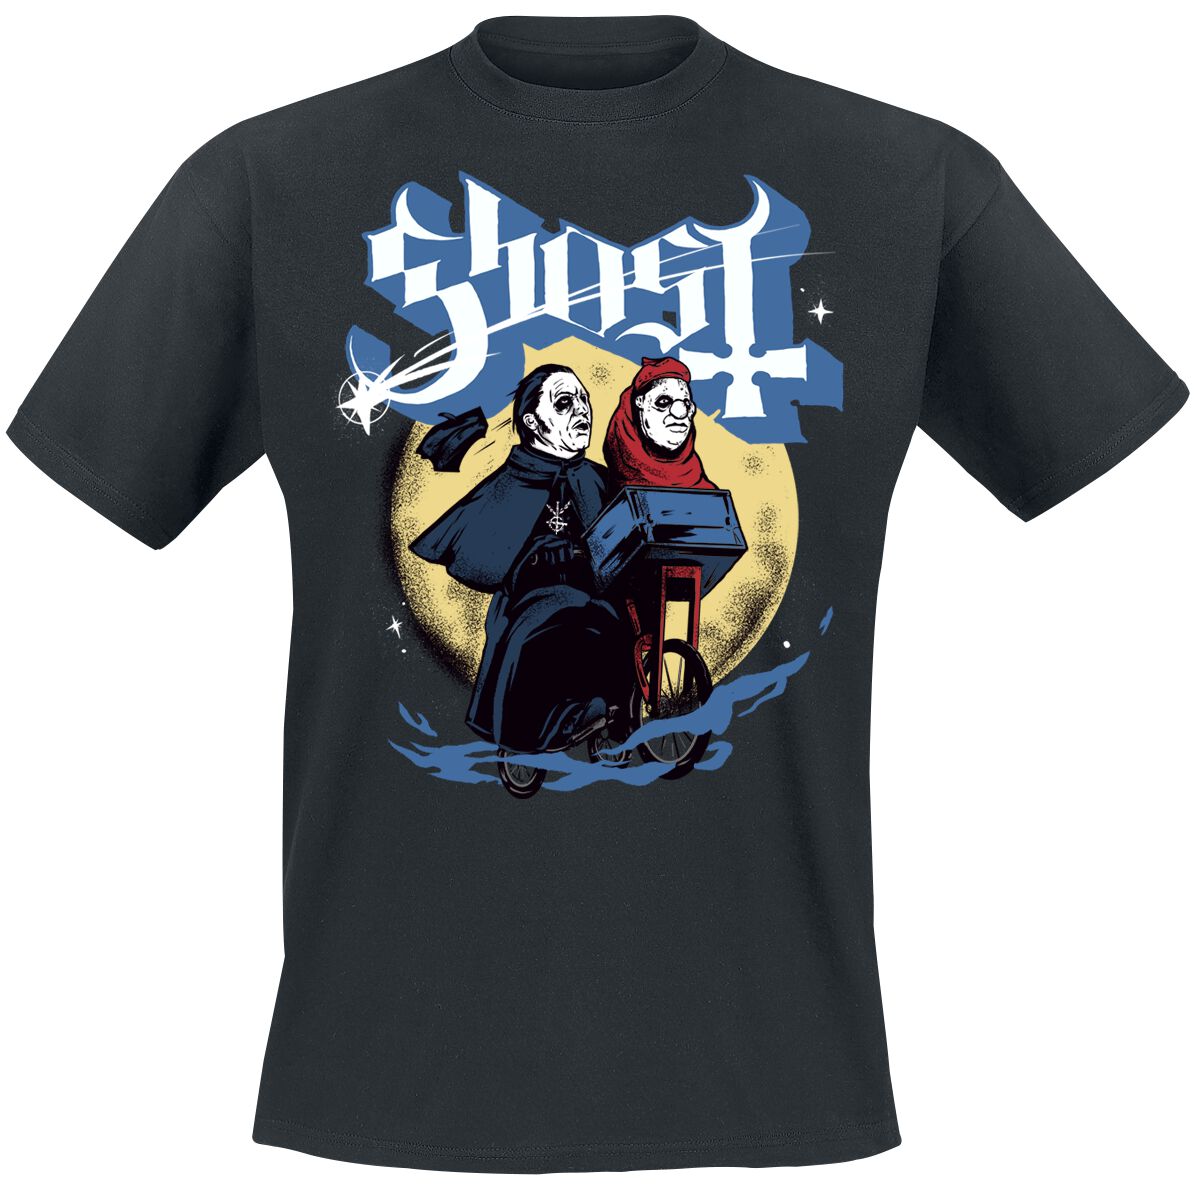 Ghost T-Shirt - Moon Shot - S bis 4XL - für Männer - Größe 4XL - schwarz  - Lizenziertes Merchandise!